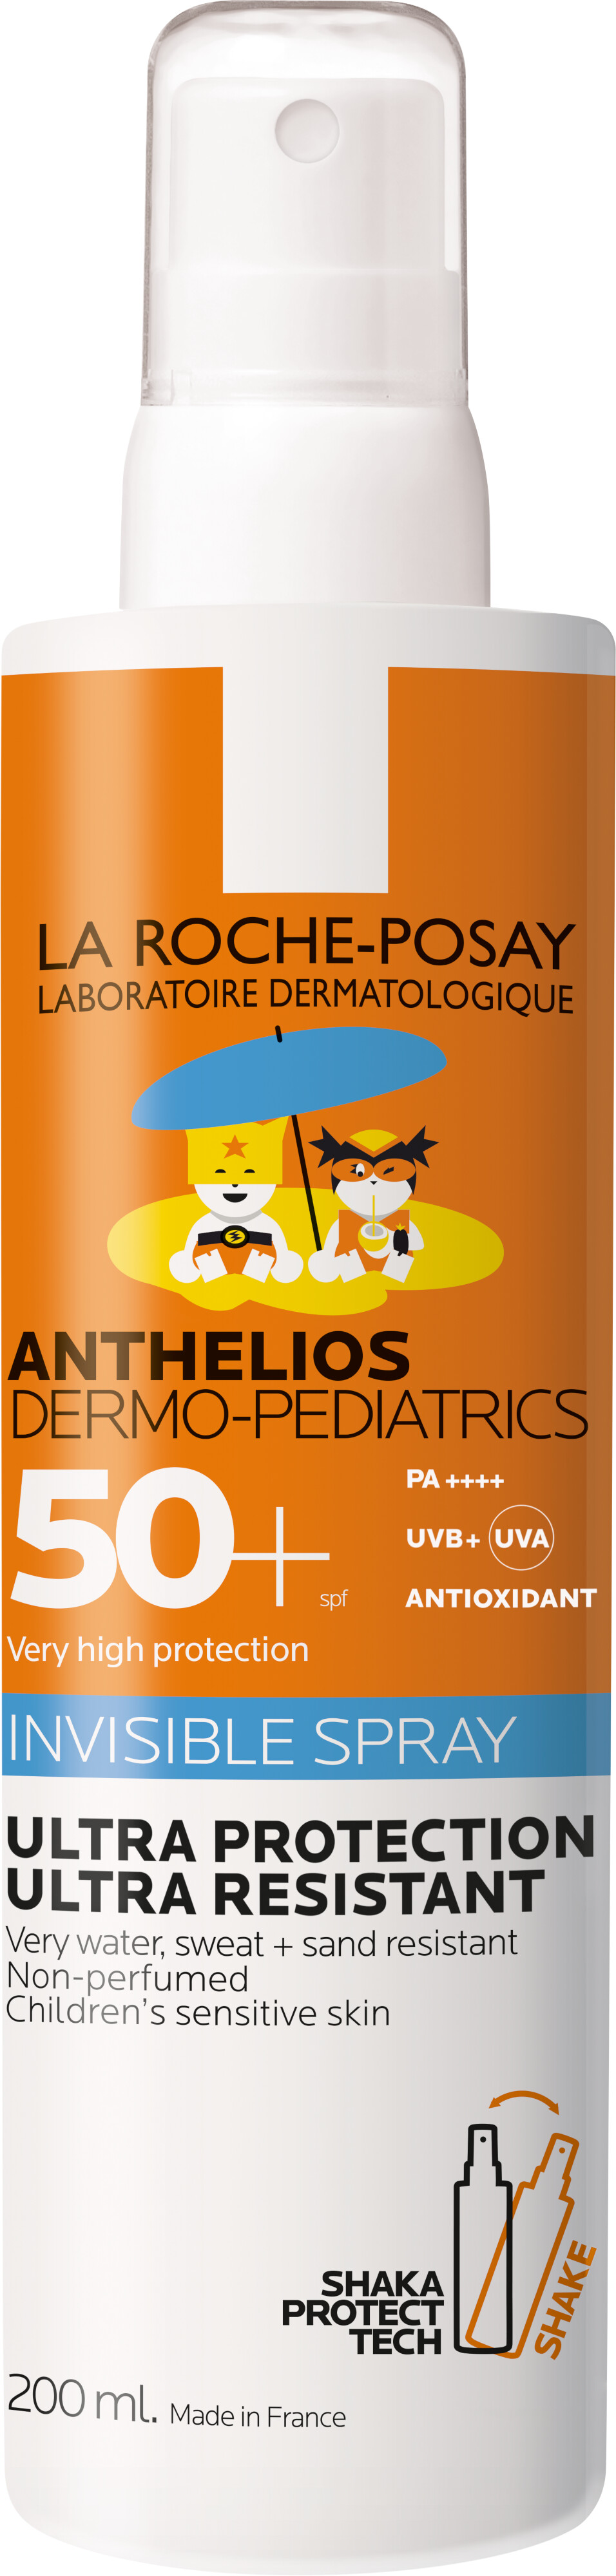 La Roche-Posay Anthelios Dermo-Pediatrics Invisible Spray SPF50+ 200ml